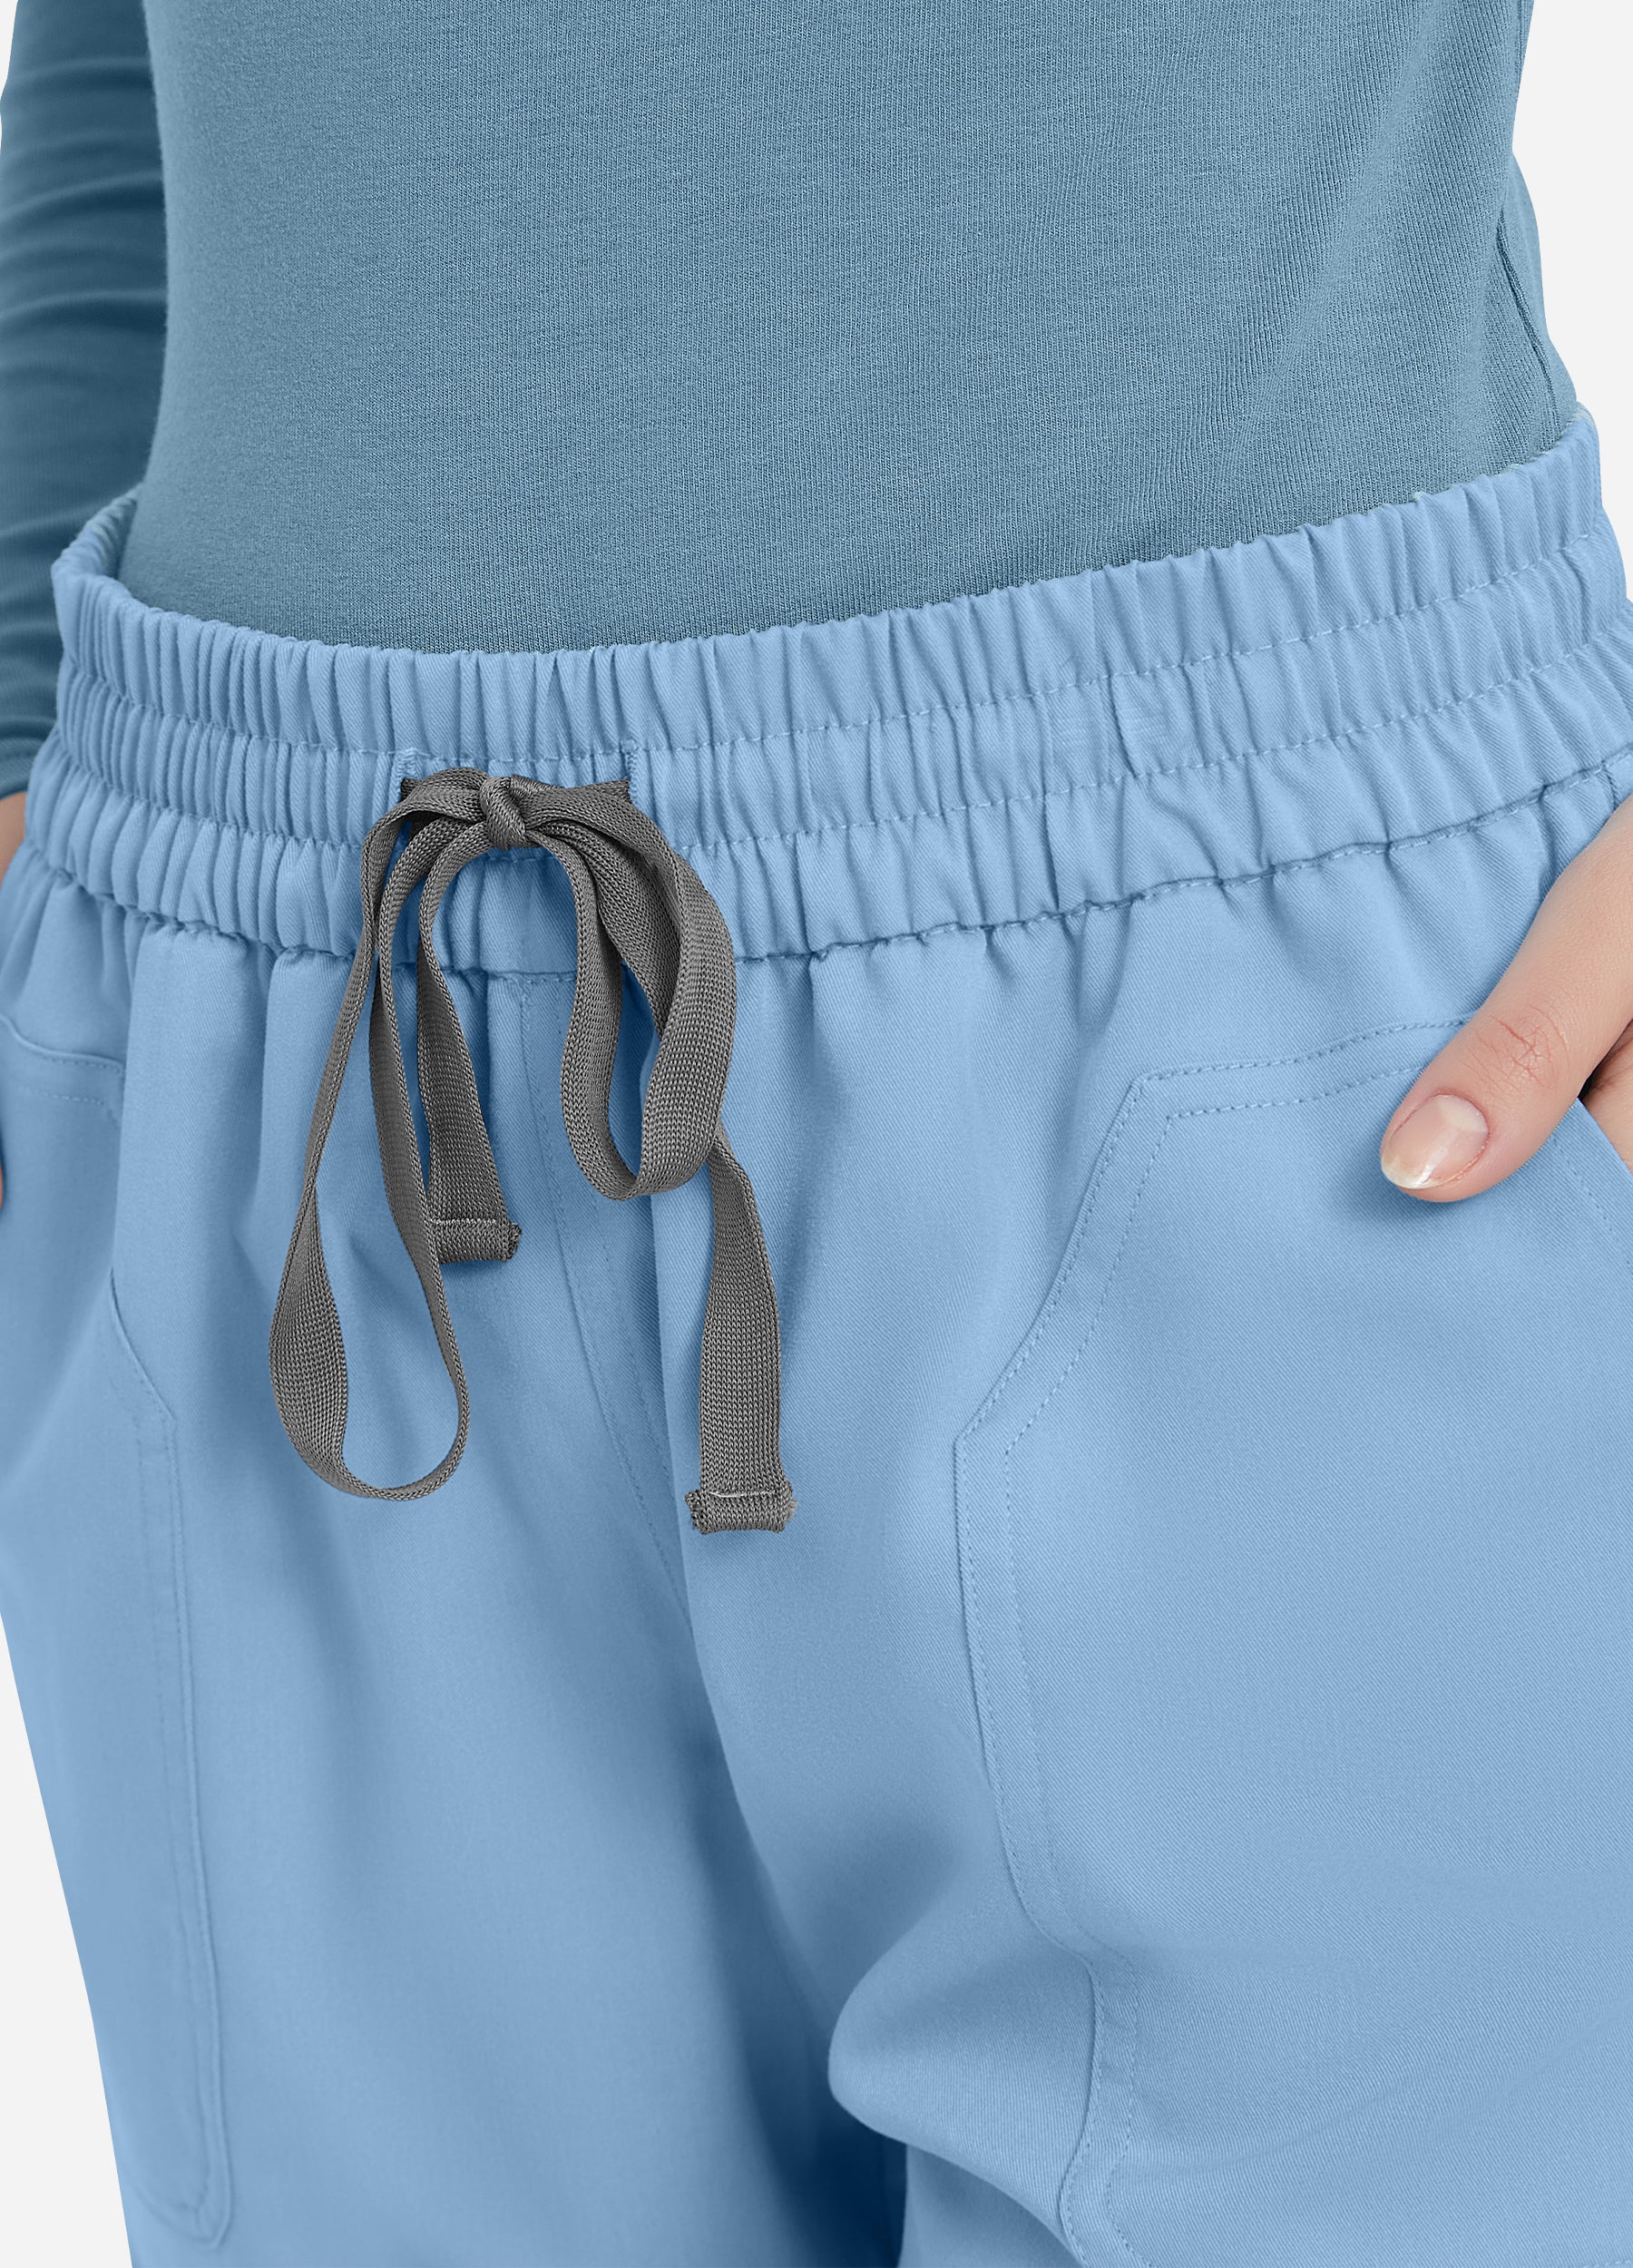 Pantalón médico con 4 bolsillos en la cintura para mujer